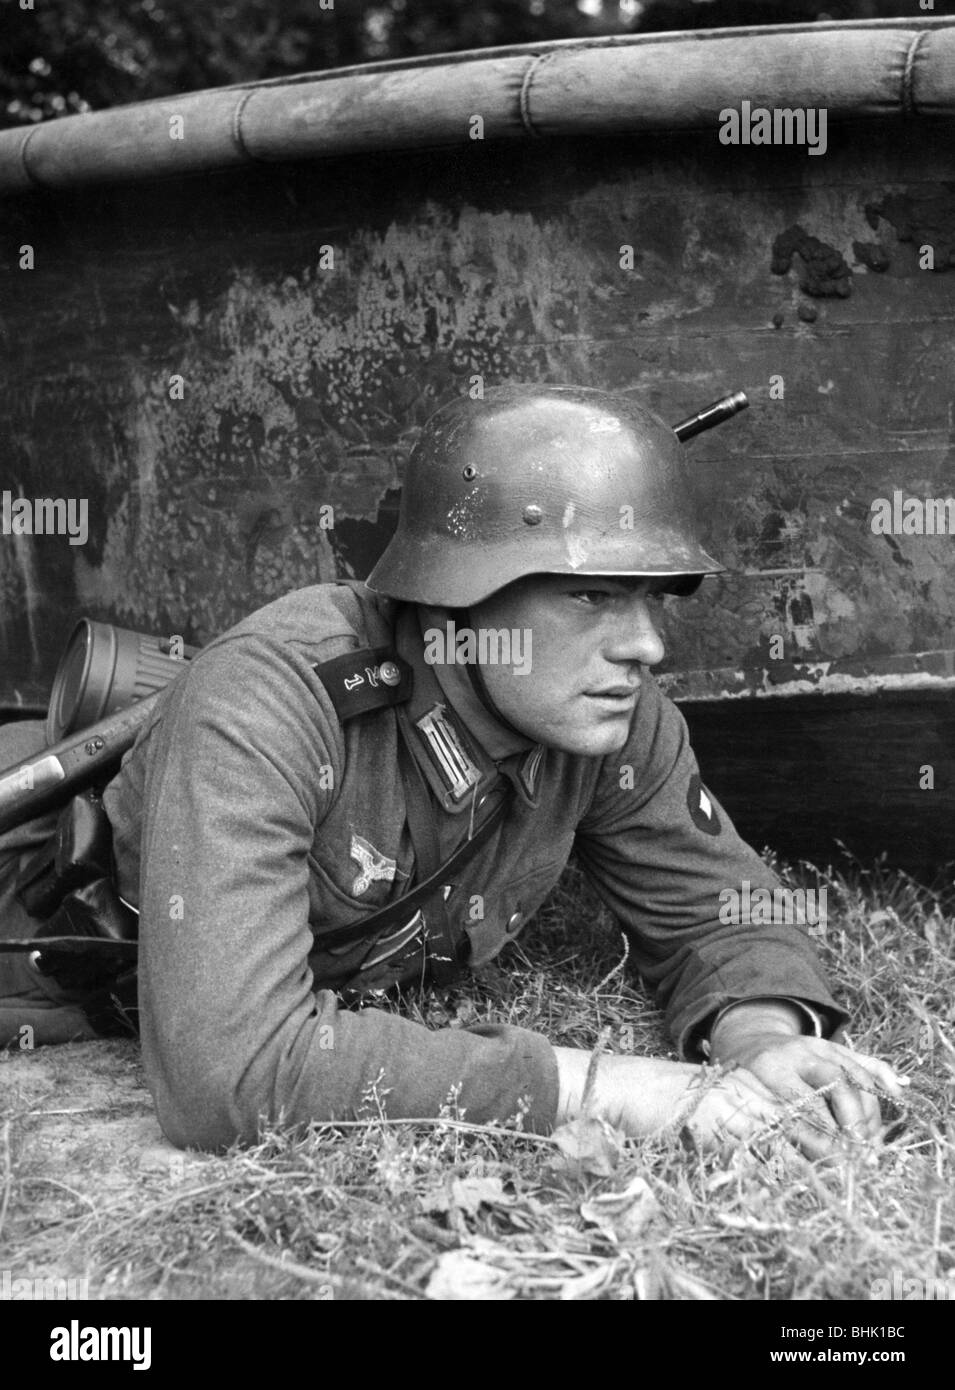 Nazismo / nazionalsocialismo, militare, Wehrmacht, esercito, pioniere dell'assalto tedesco della 3rd Company / Pionierlehrbataillon 1 durante una manovra, 1940/1941, Foto Stock